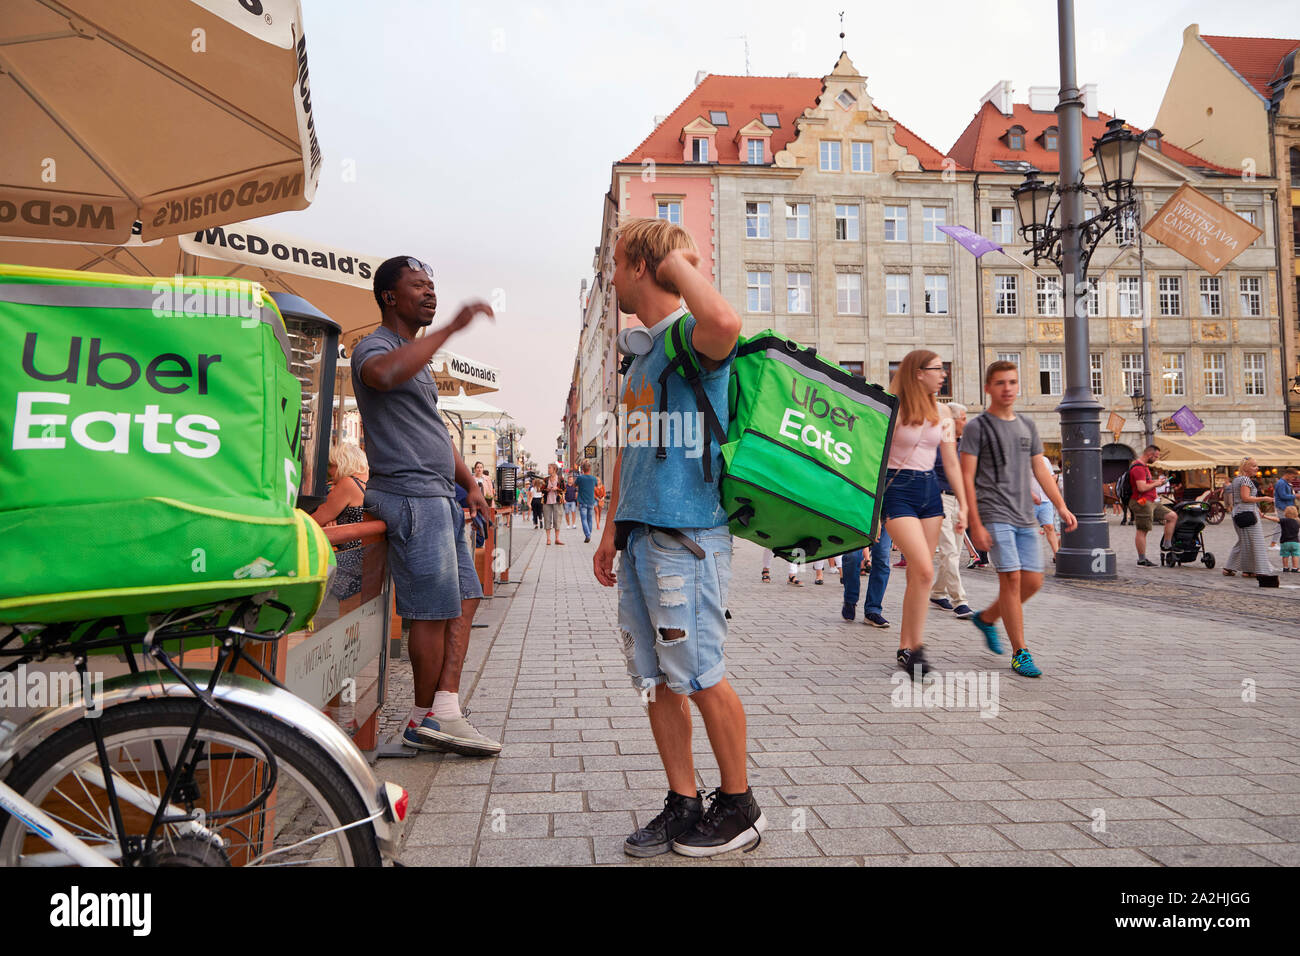 Polen Wroclaw Uber mangia il driver su una bici in attesa per il cibo nel corso di una conversazione con un collega, un compagno di lavoro 8-8-2019 foto Jaco Klamer Foto Stock